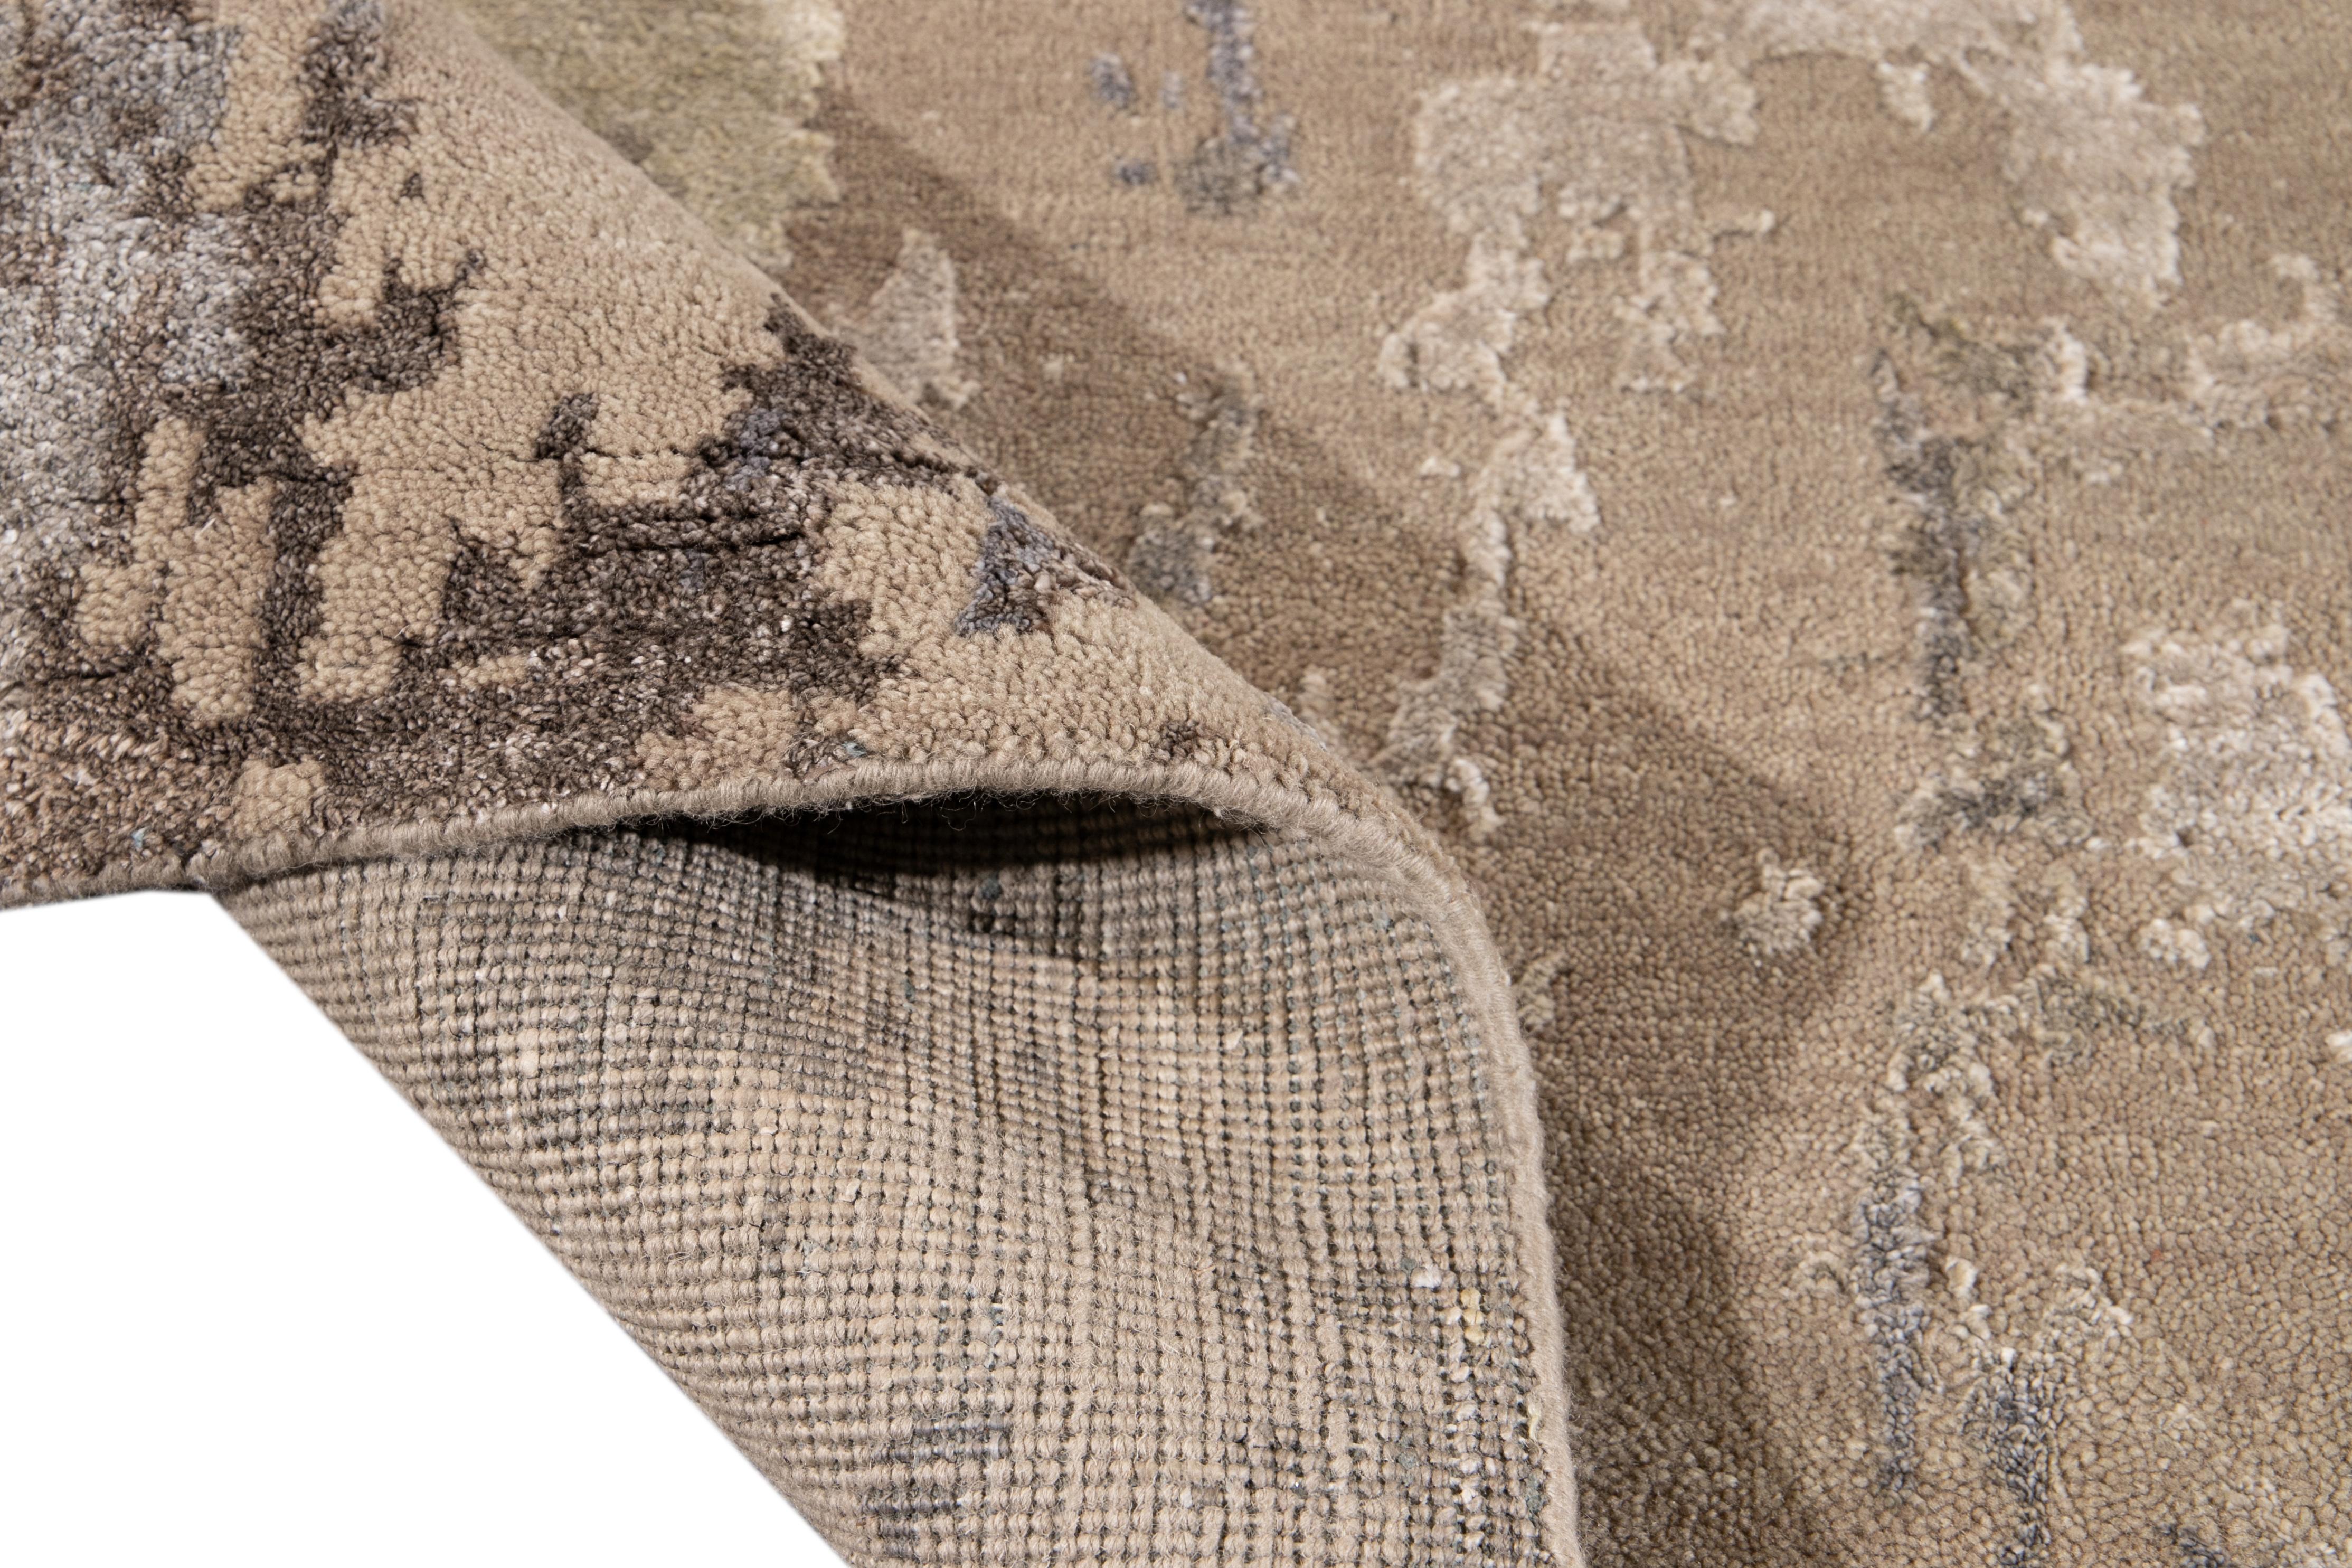 Magnifique tapis contemporain en laine et en soie, fait à la main, avec un champ beige. Ce tapis présente des accents de bleu, de gris et d'ivoire dans un magnifique motif abstrait.

Ce tapis mesure : 10' x 14'.